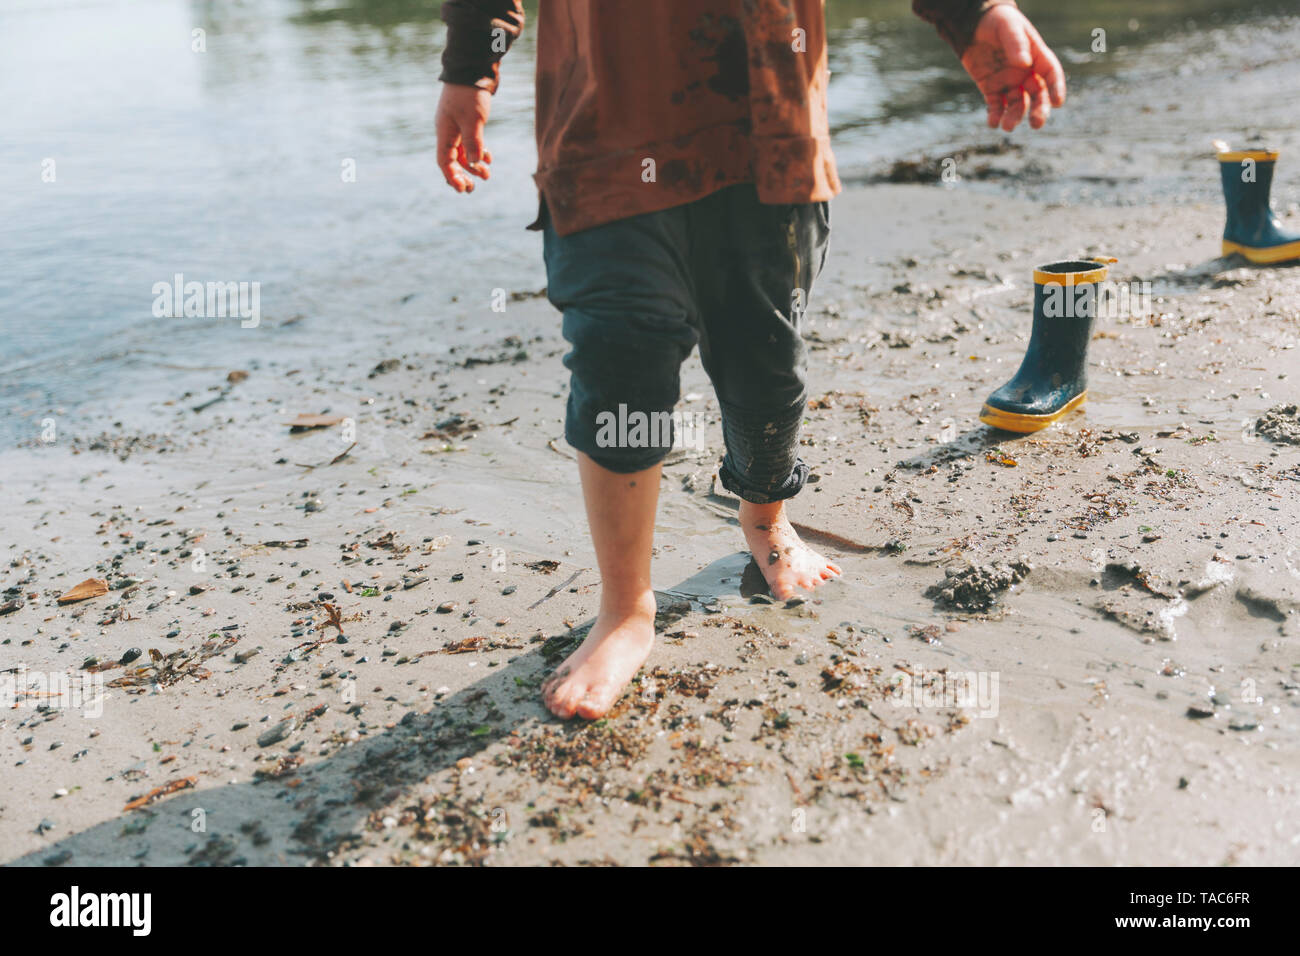 Niño jugando en la playa, caminar descalzo en el barro Foto de stock